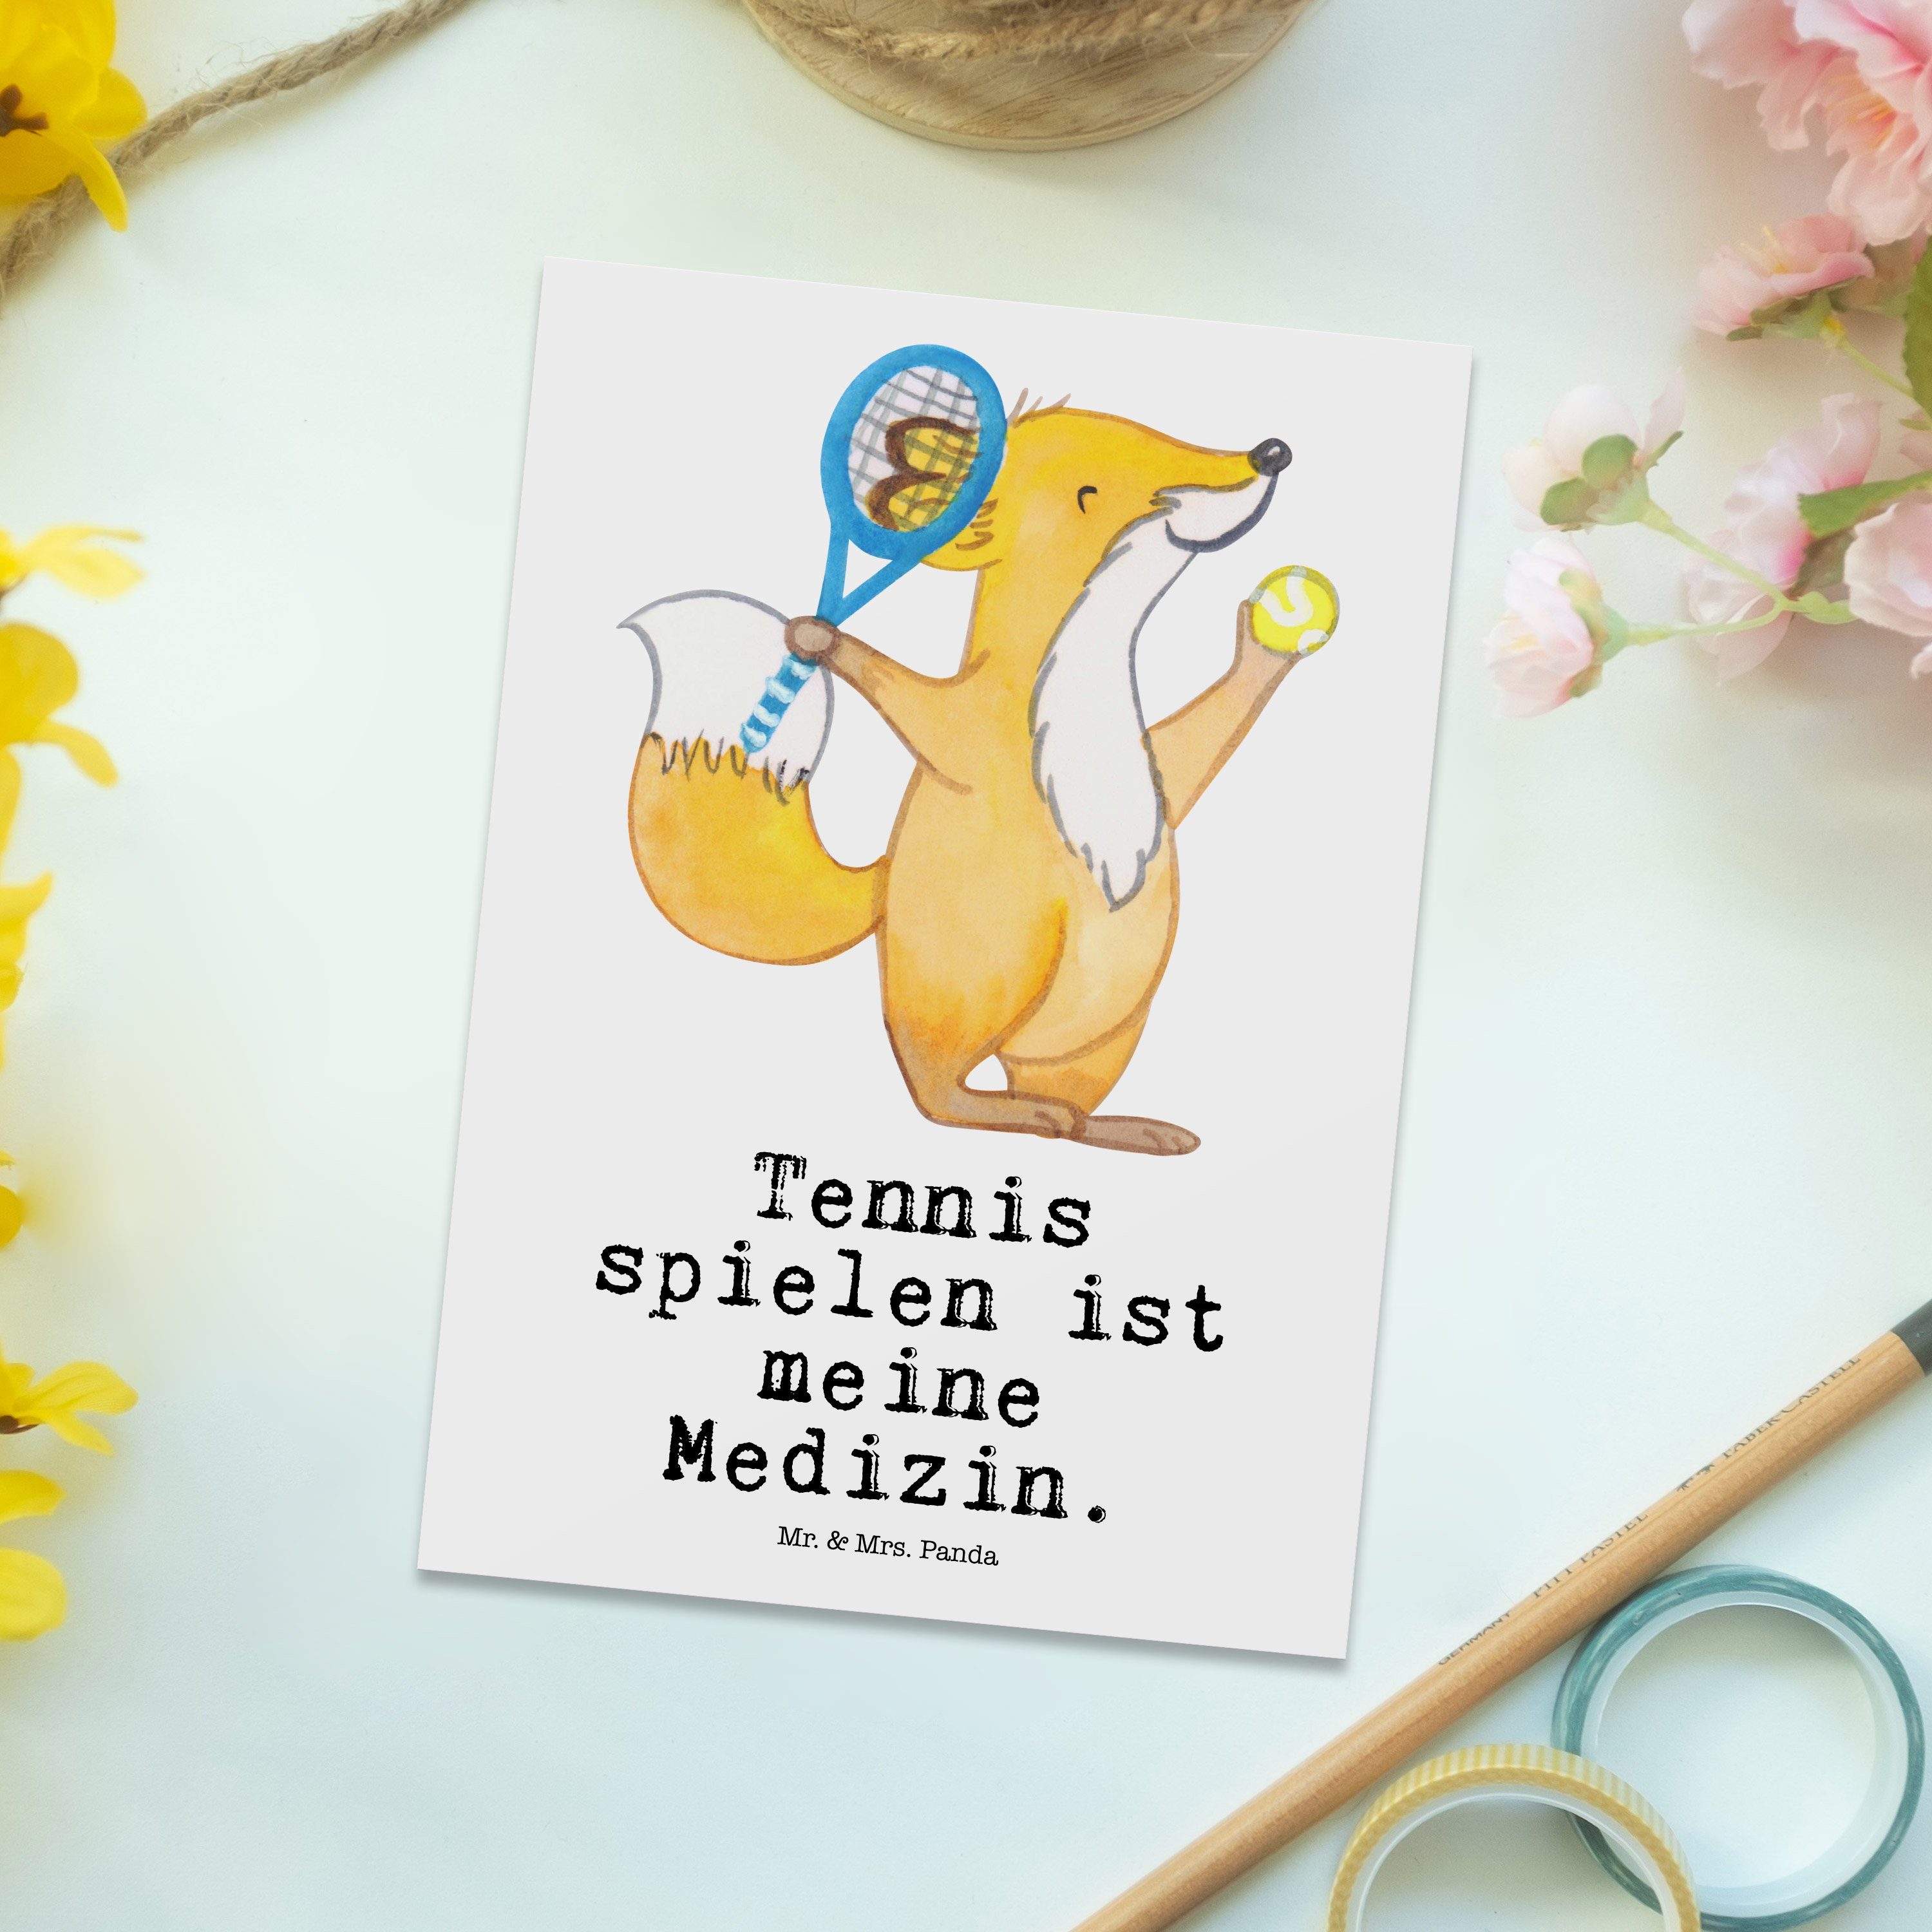 Mr. & Mrs. Panda Medizin Postkarte Geschenk, Weiß - Ansichtskarte, Sporta spielen Tennis - Fuchs